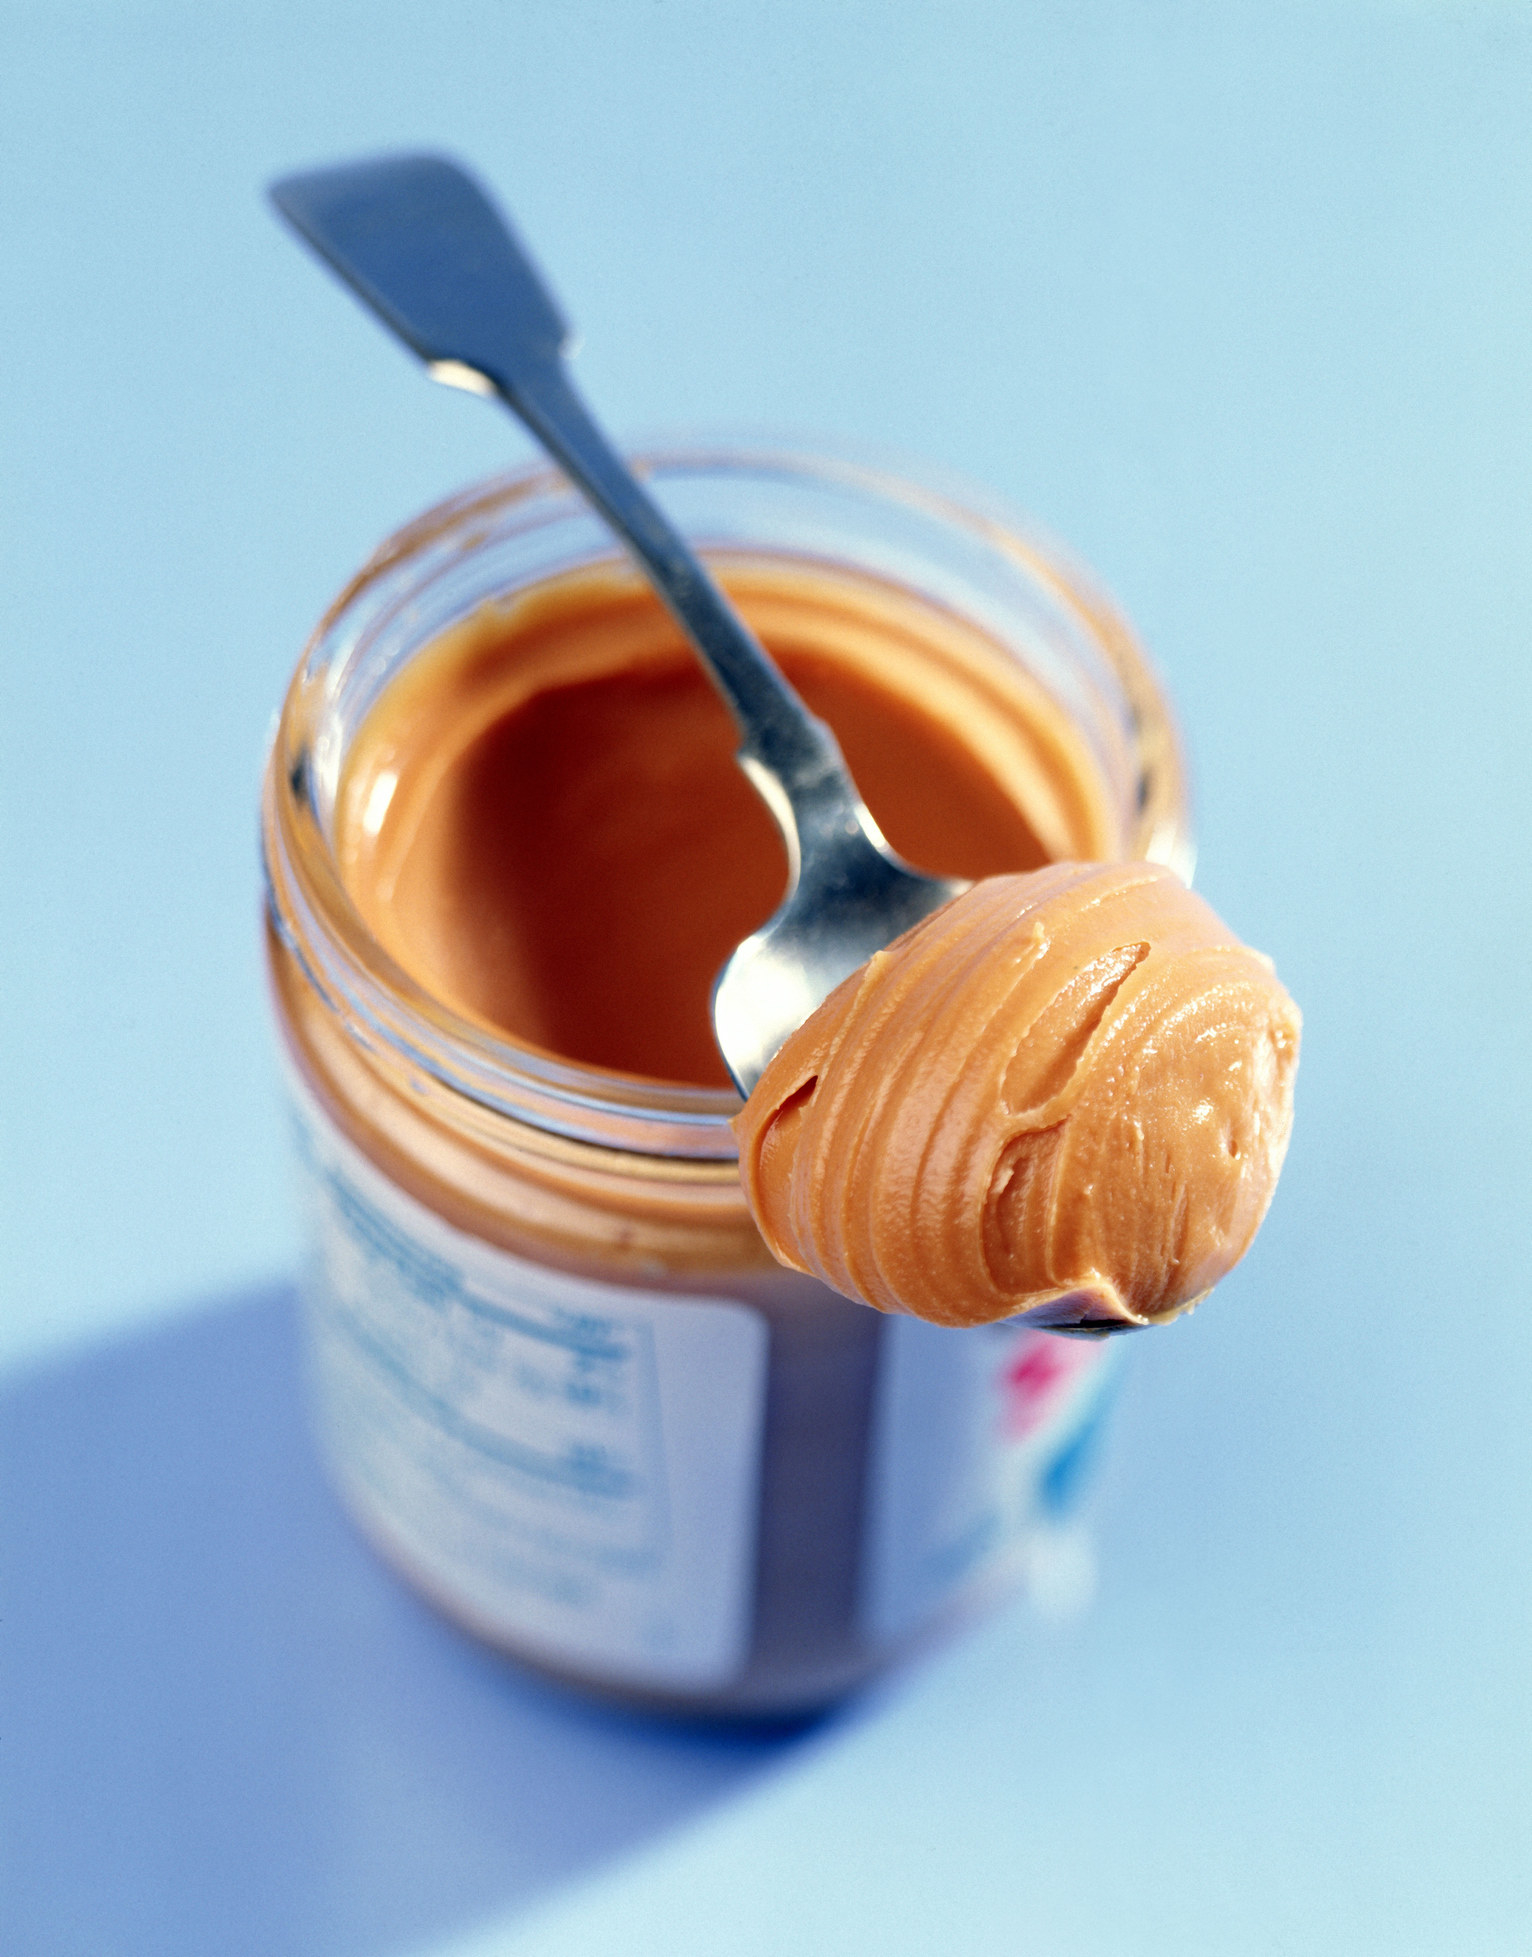 Peanut butter on a spoon in a jar